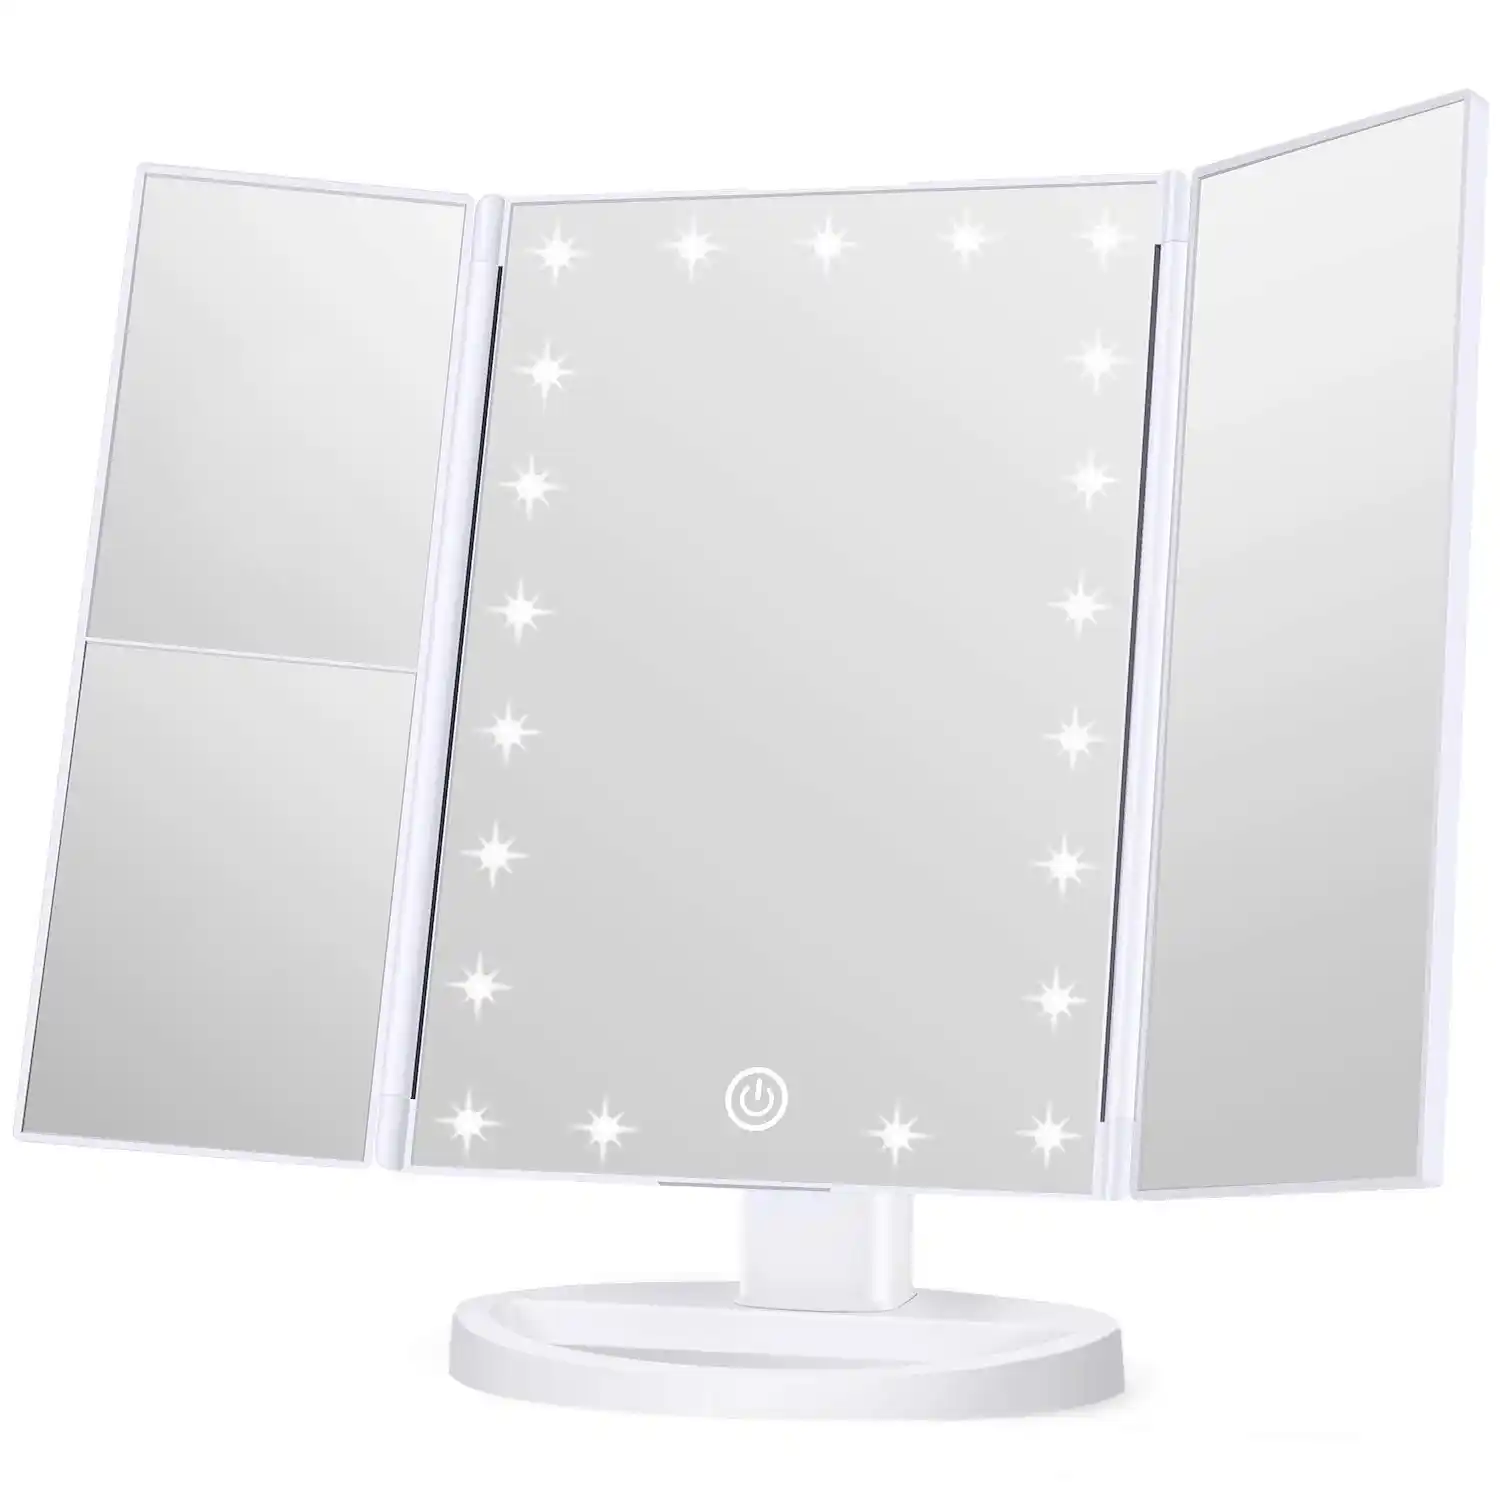 WONDRUZ Makeup Mirror Vanity Mirror with Lights